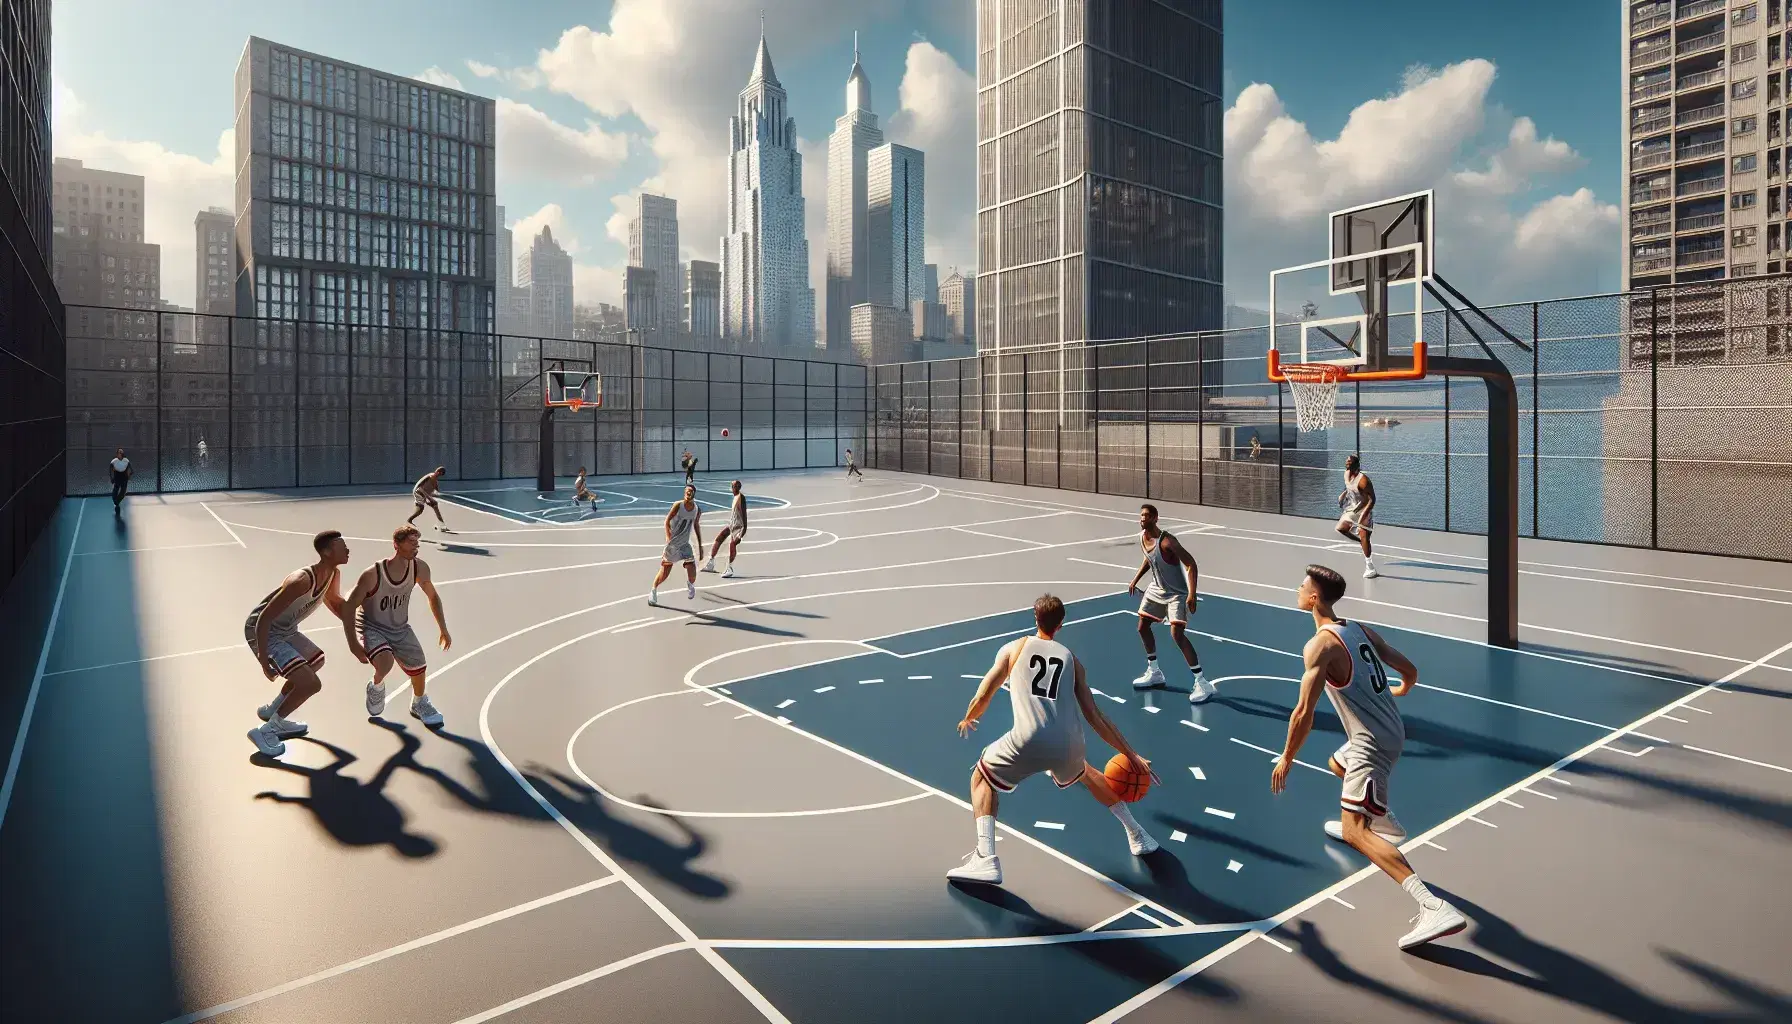 Cancha de baloncesto 3x3 al aire libre con jugadores en acción, defensores intentando interceptar pase y fondo urbano con rascacielos bajo cielo azul.